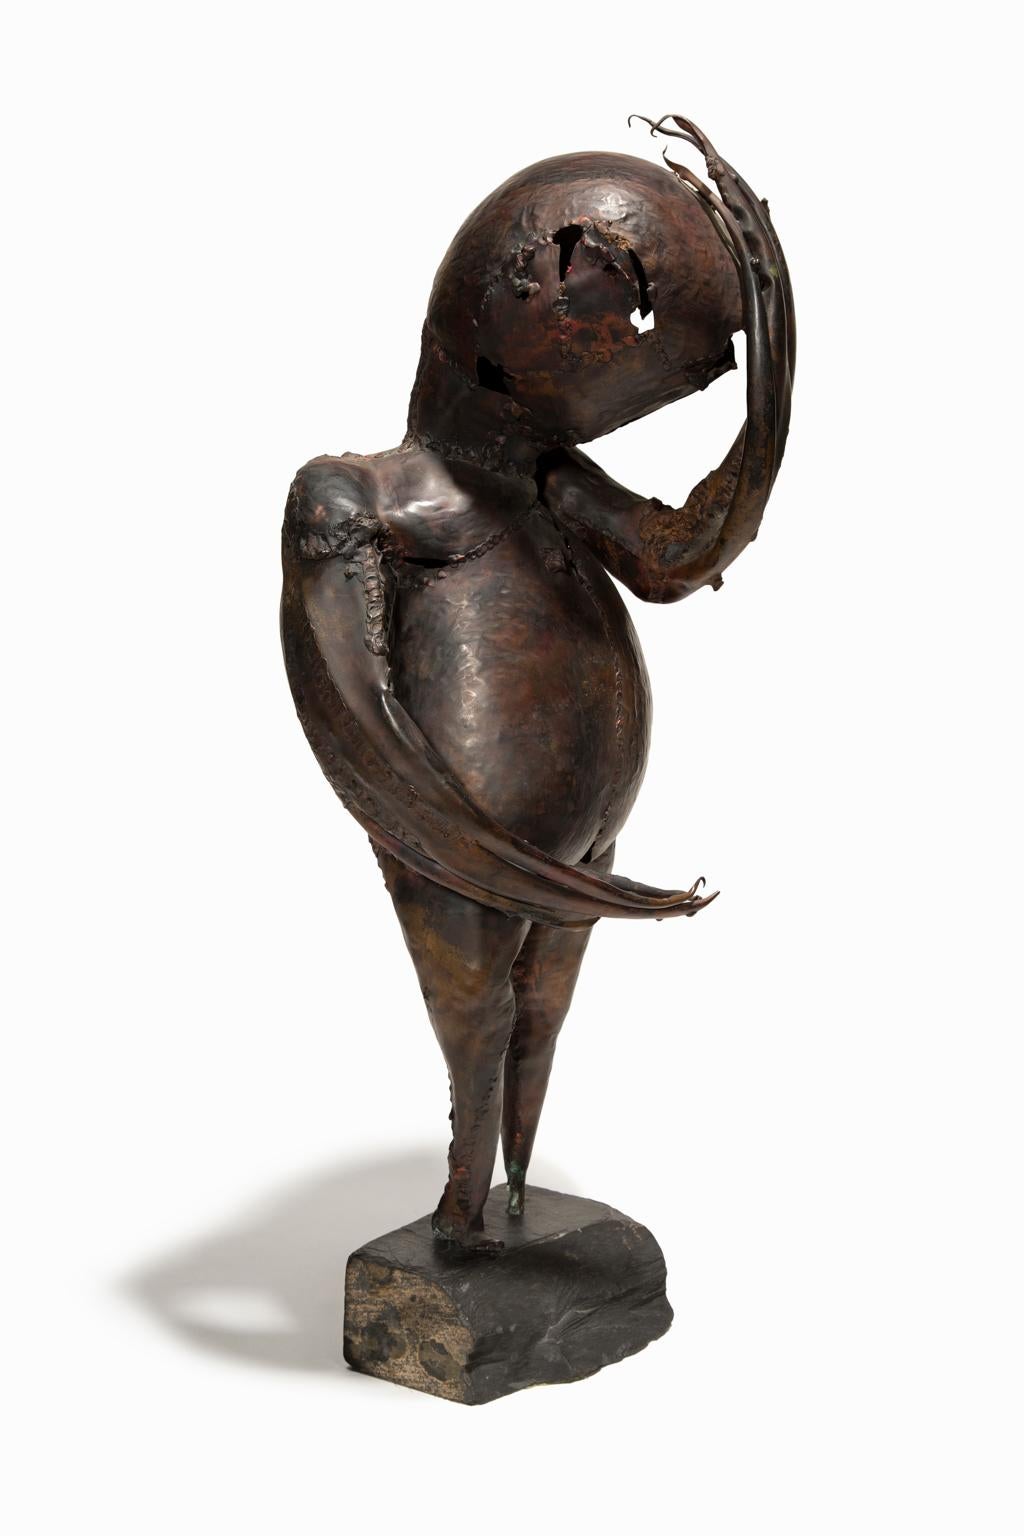  Reinhoud dHaese Skulptur Mythische Figur aus Kupfer und Stein, Skulptur